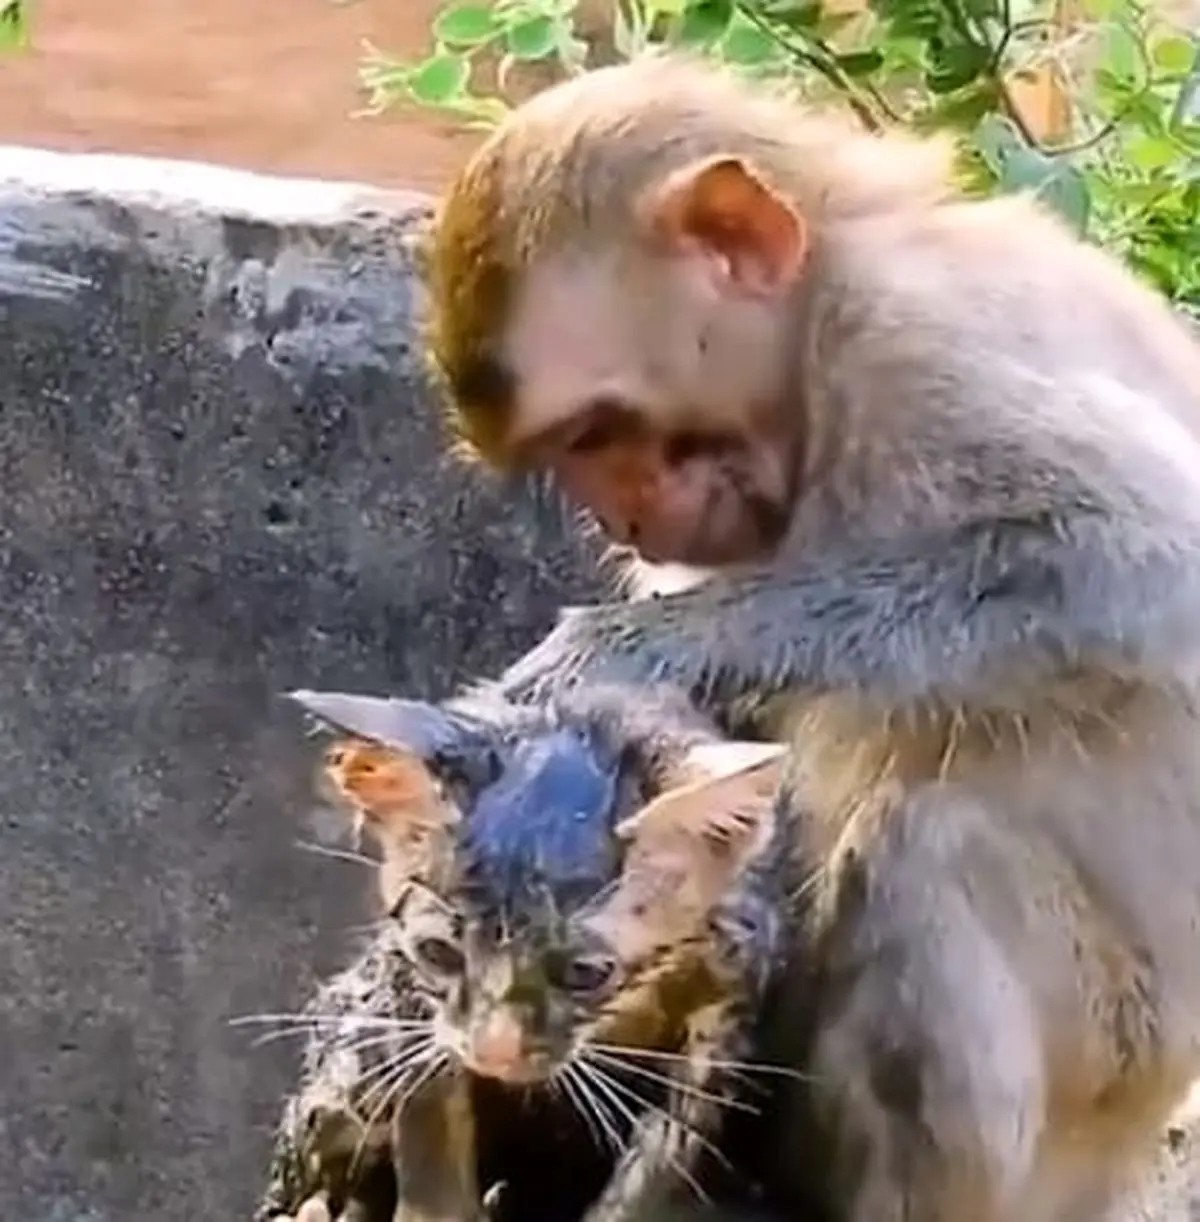 میمون شجاع گربه را از غرق شدن در چاه نجات داد + تصاویر